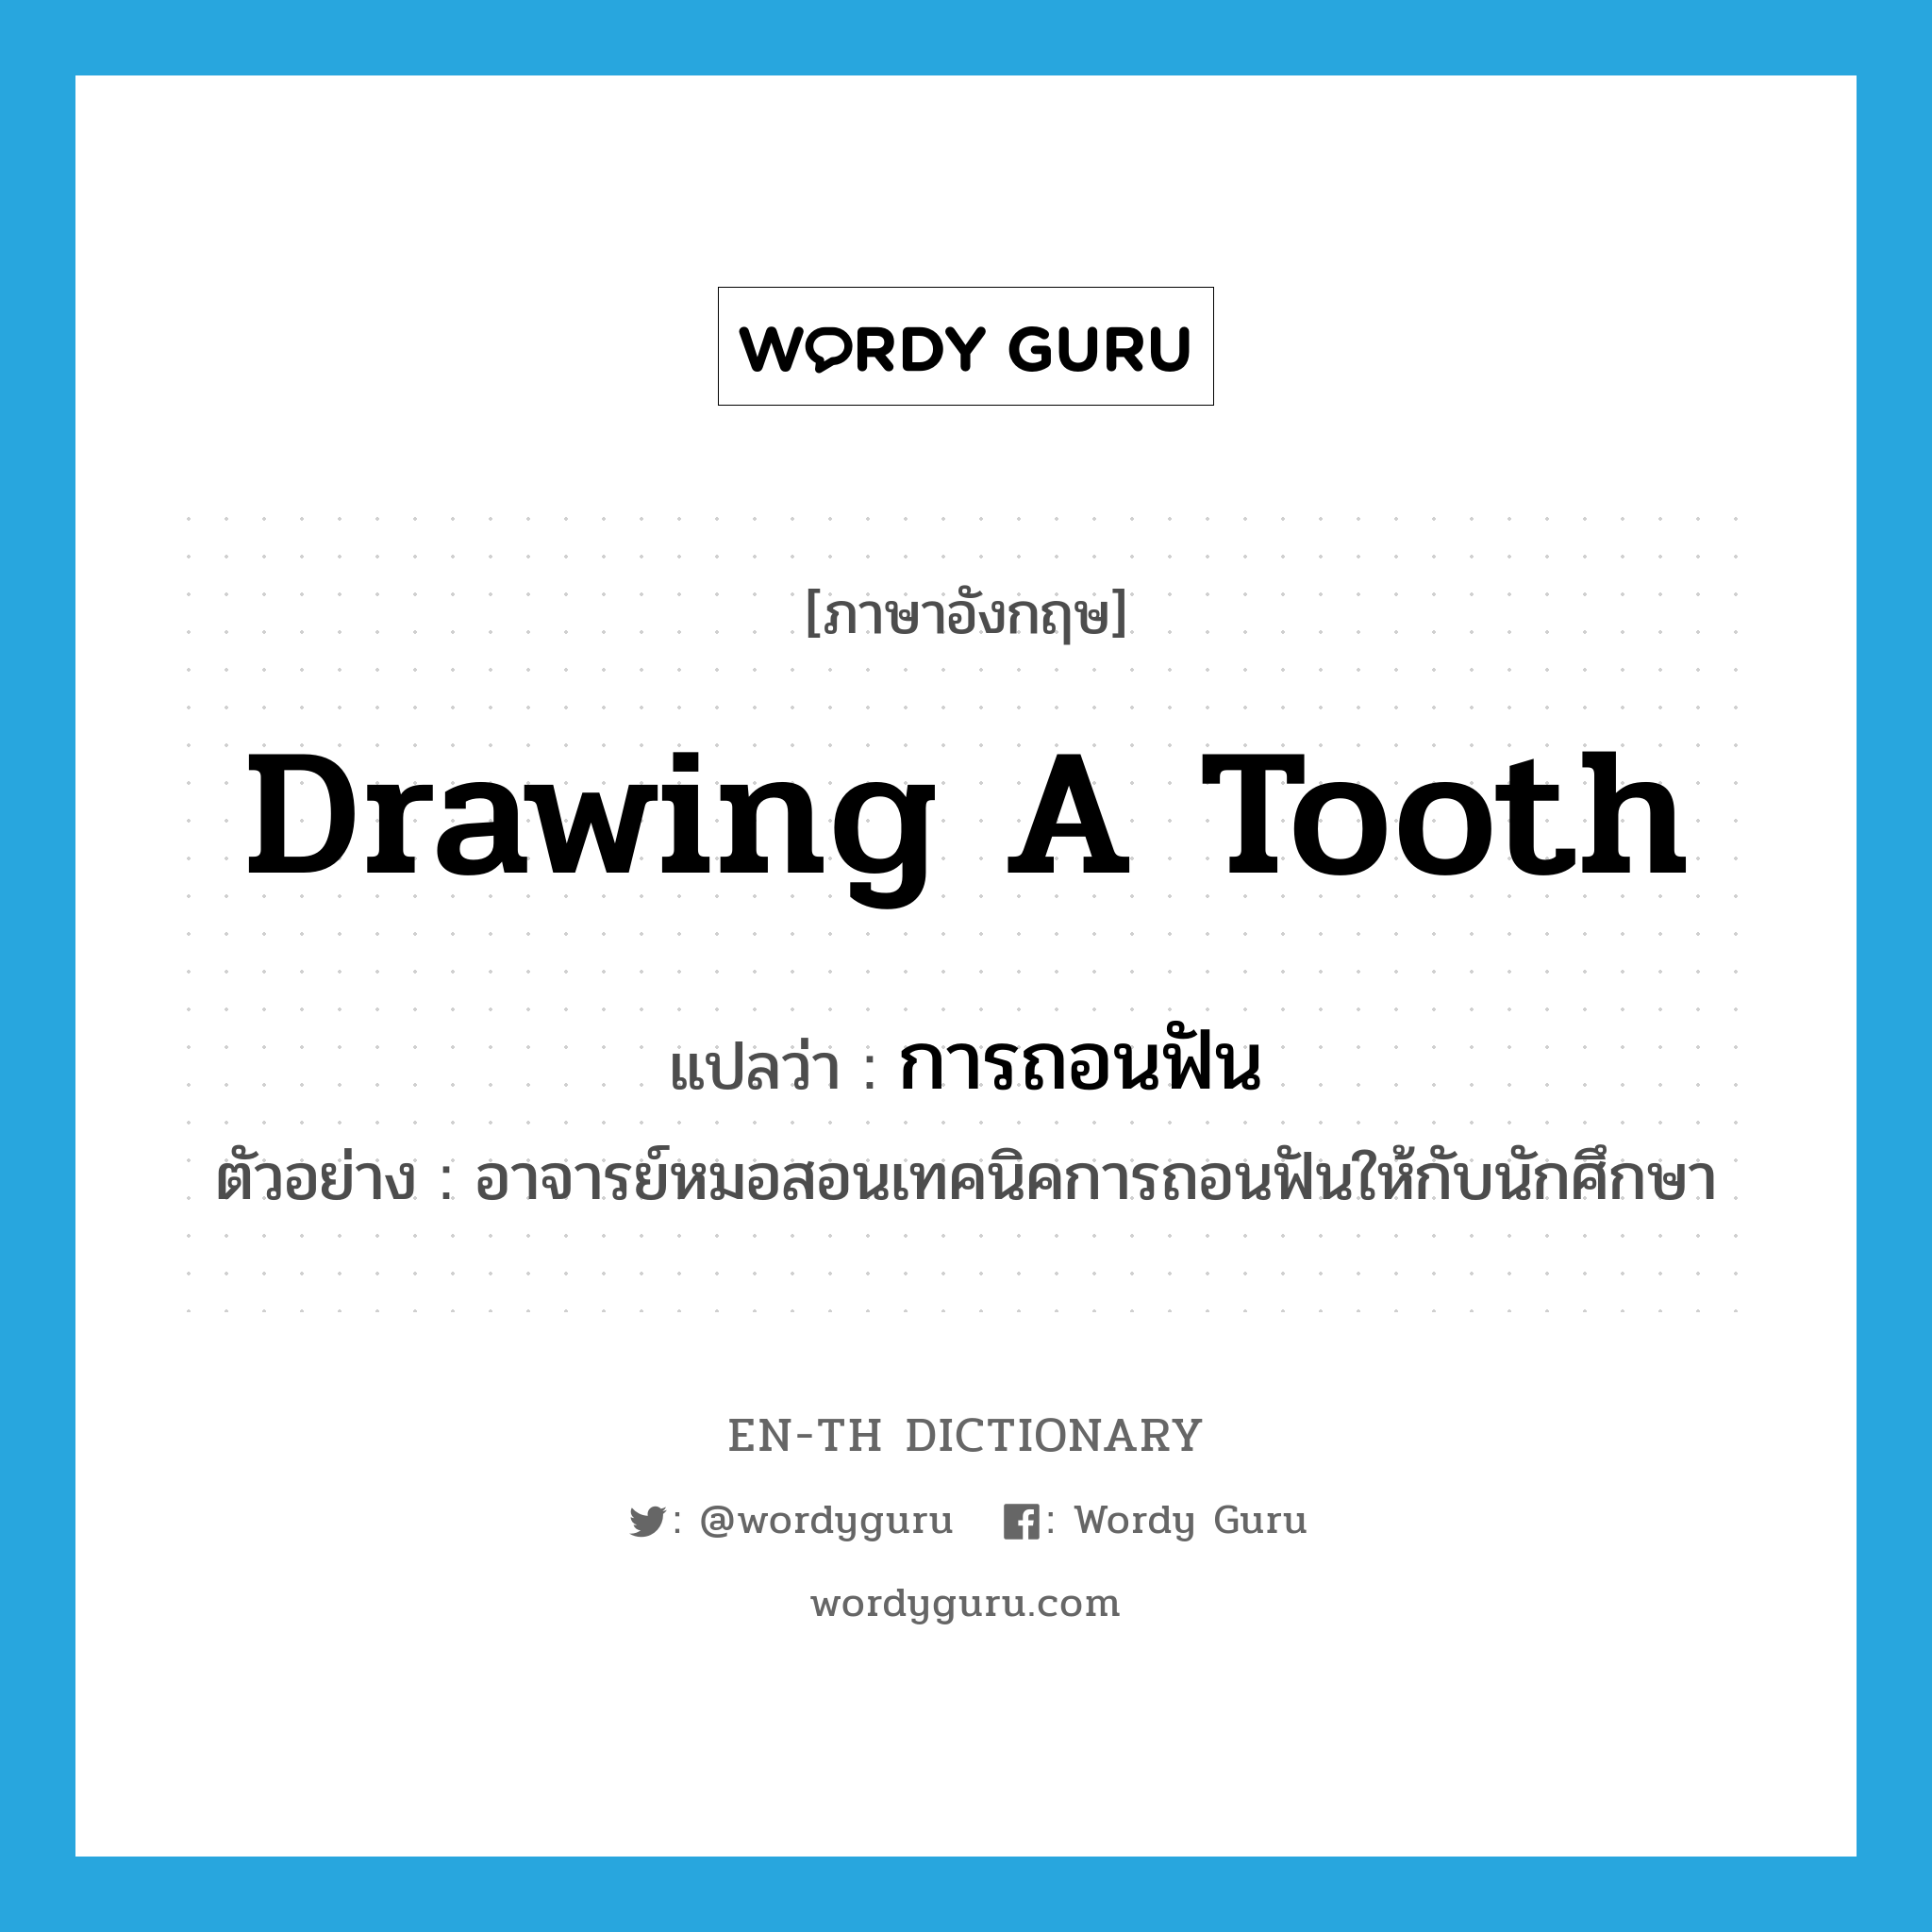 drawing a tooth แปลว่า?, คำศัพท์ภาษาอังกฤษ drawing a tooth แปลว่า การถอนฟัน ประเภท N ตัวอย่าง อาจารย์หมอสอนเทคนิคการถอนฟันให้กับนักศึกษา หมวด N